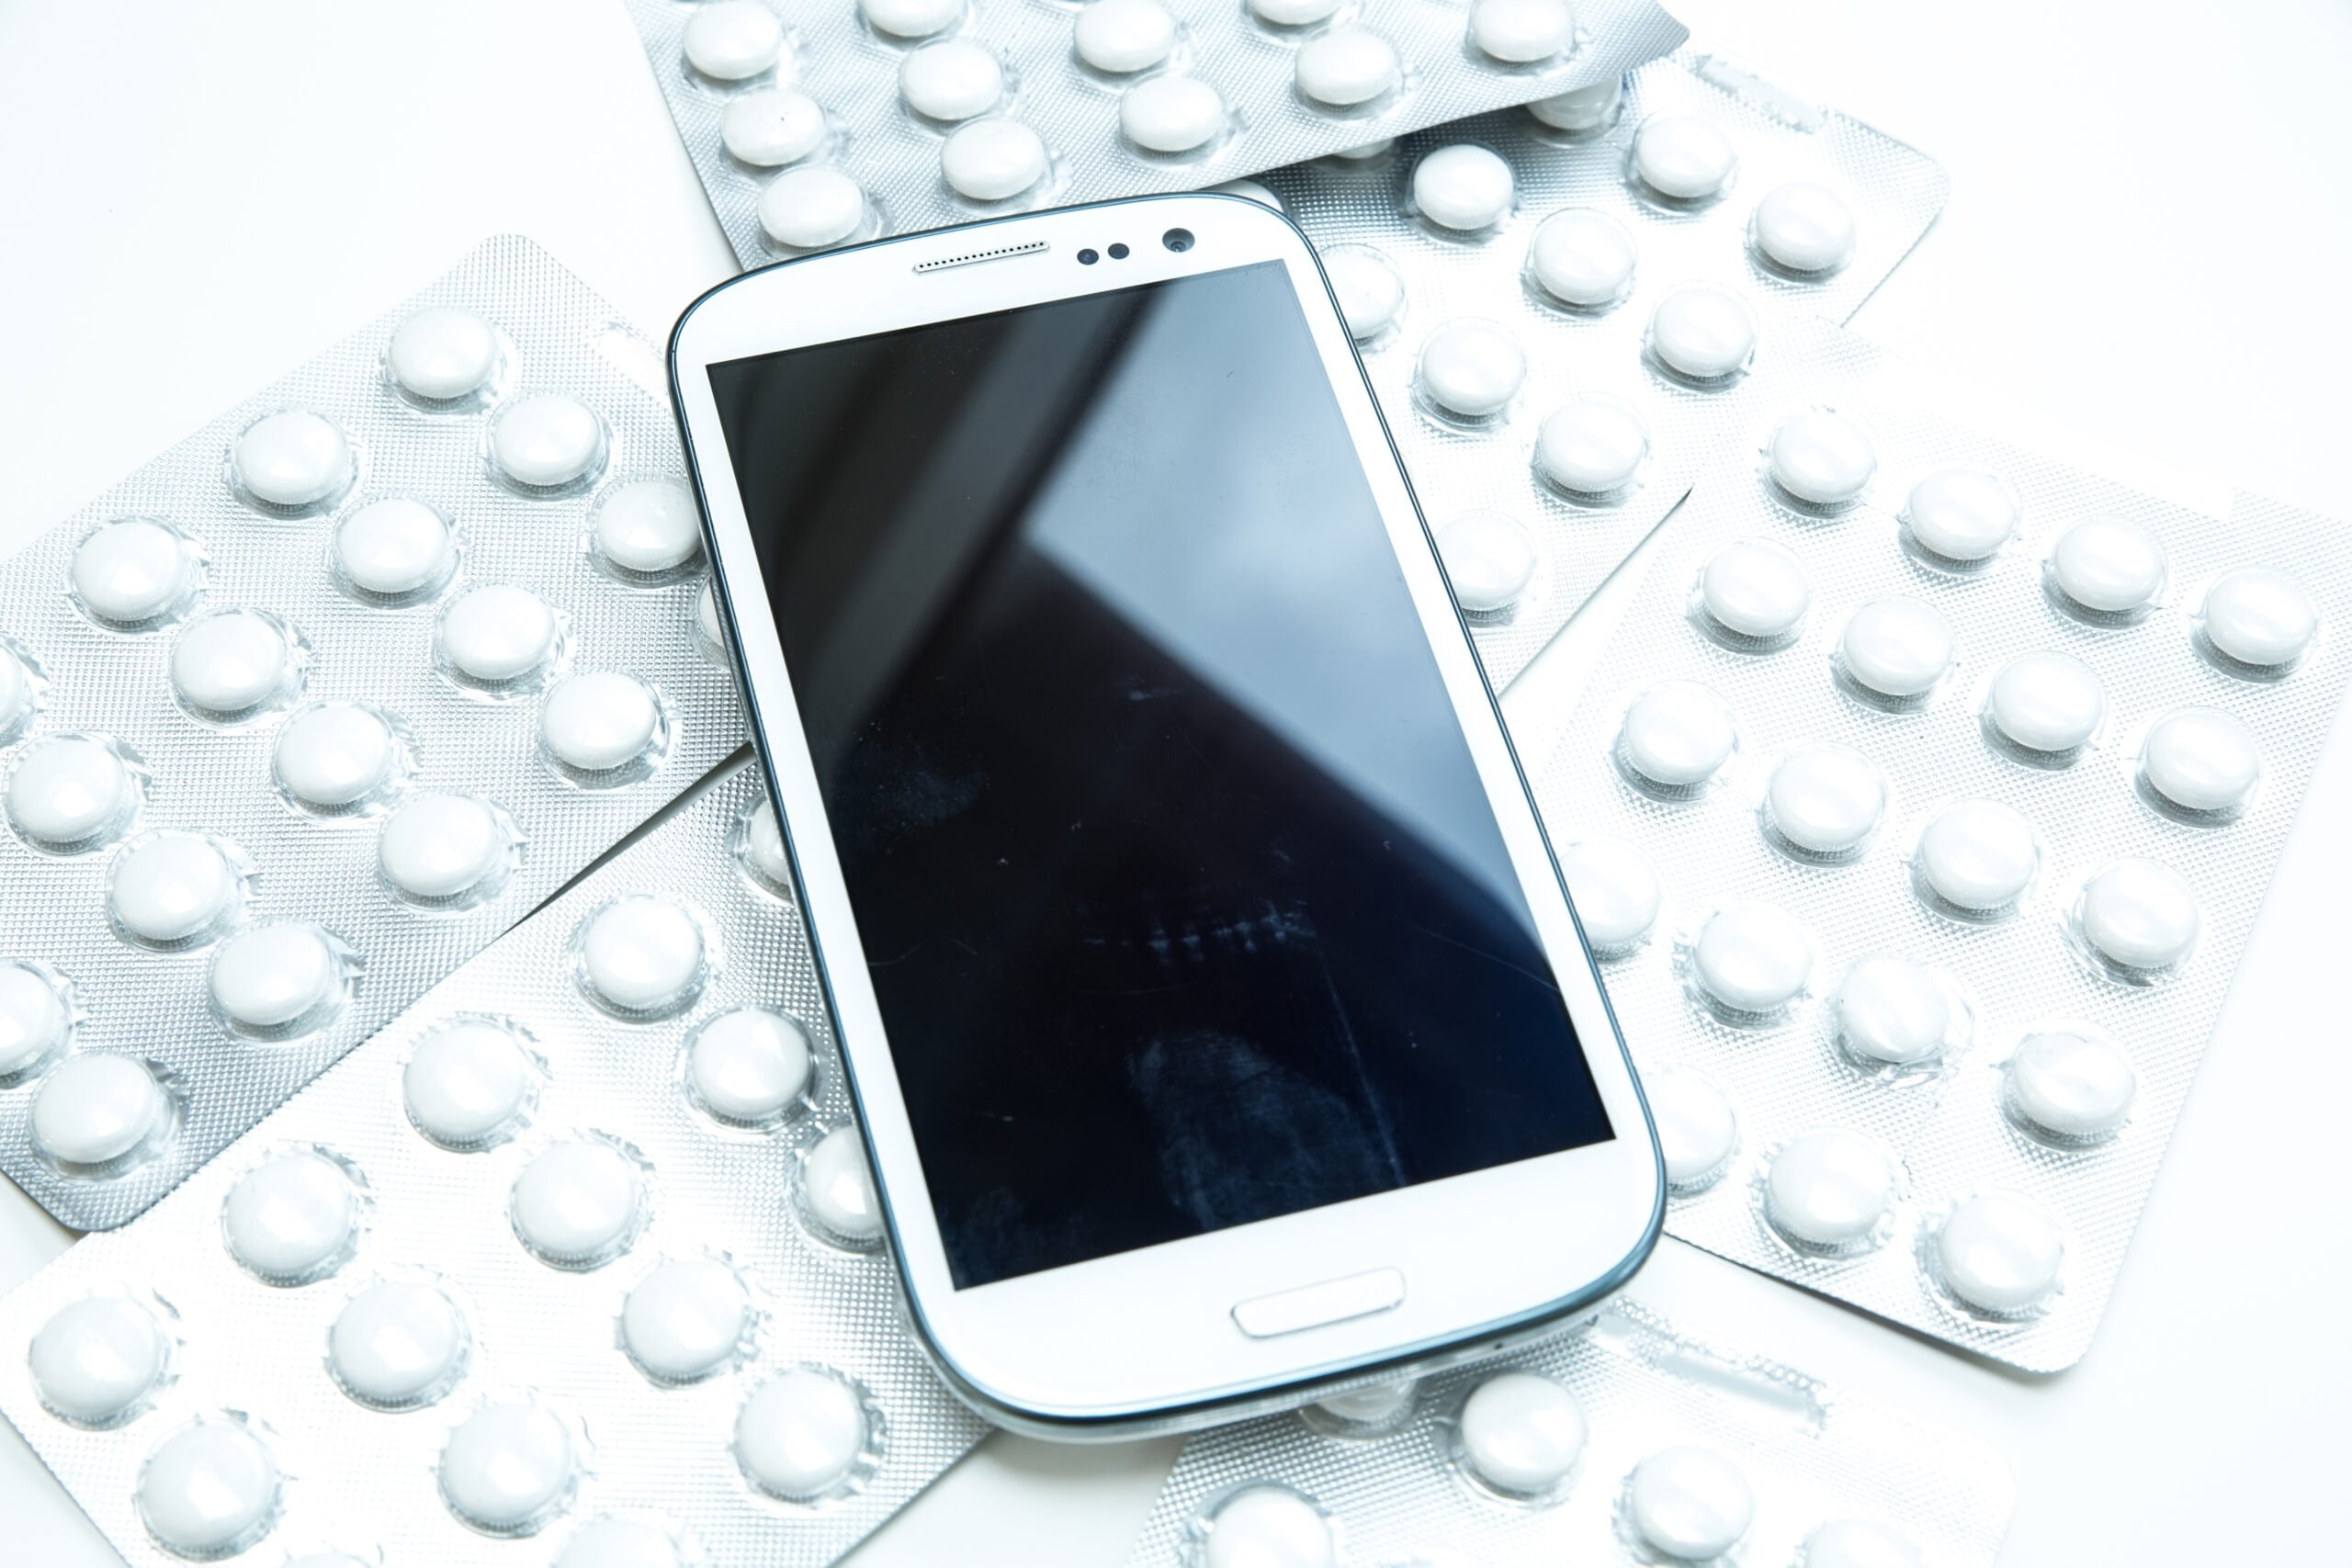 Biały smartfon położony na tle blistrów z tabletkami na białym stole. Aplikacje zdrowotne na twoim smartfonie.